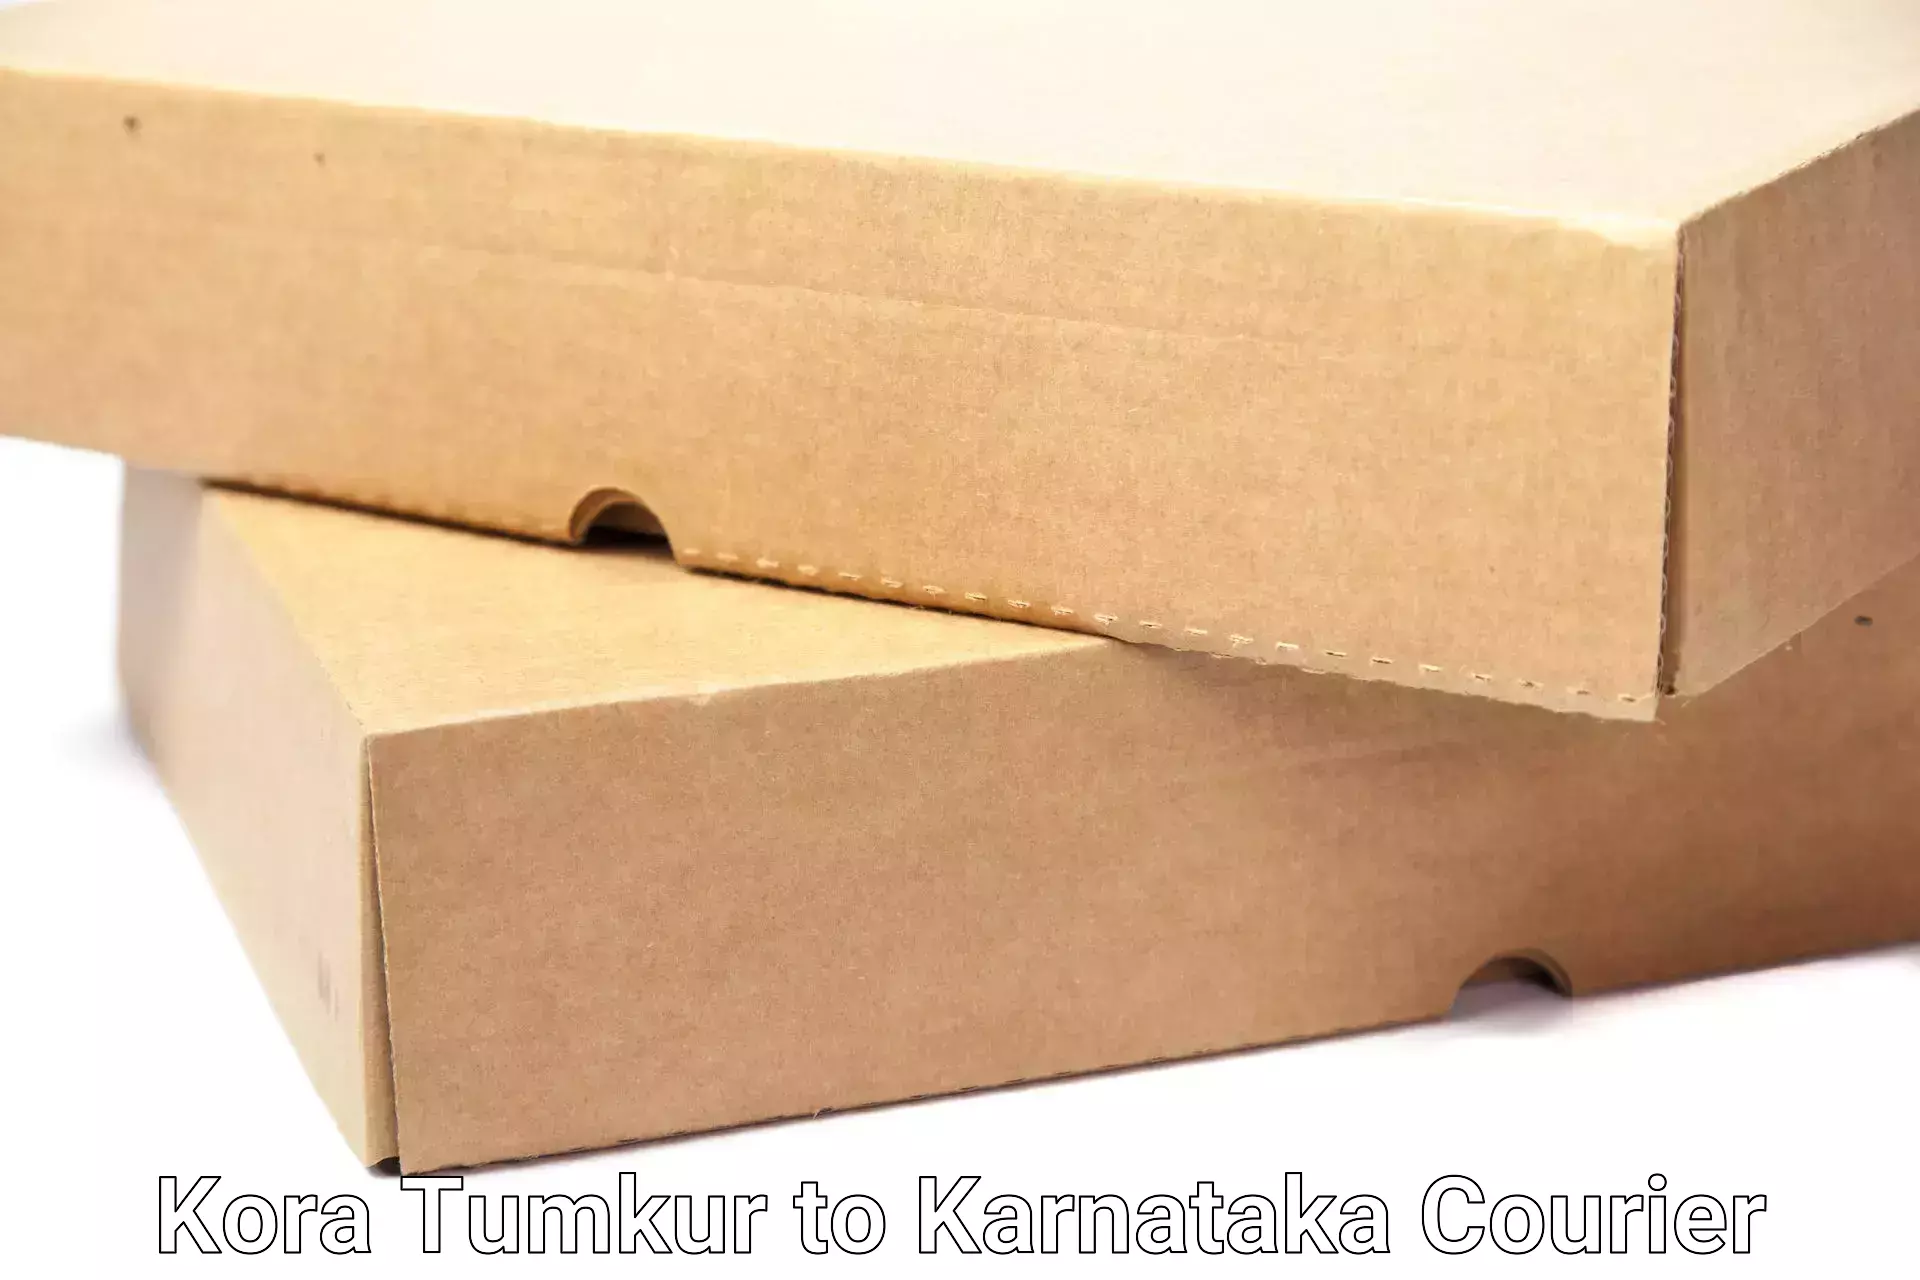 Professional furniture shifting Kora Tumkur to Gauribidanur